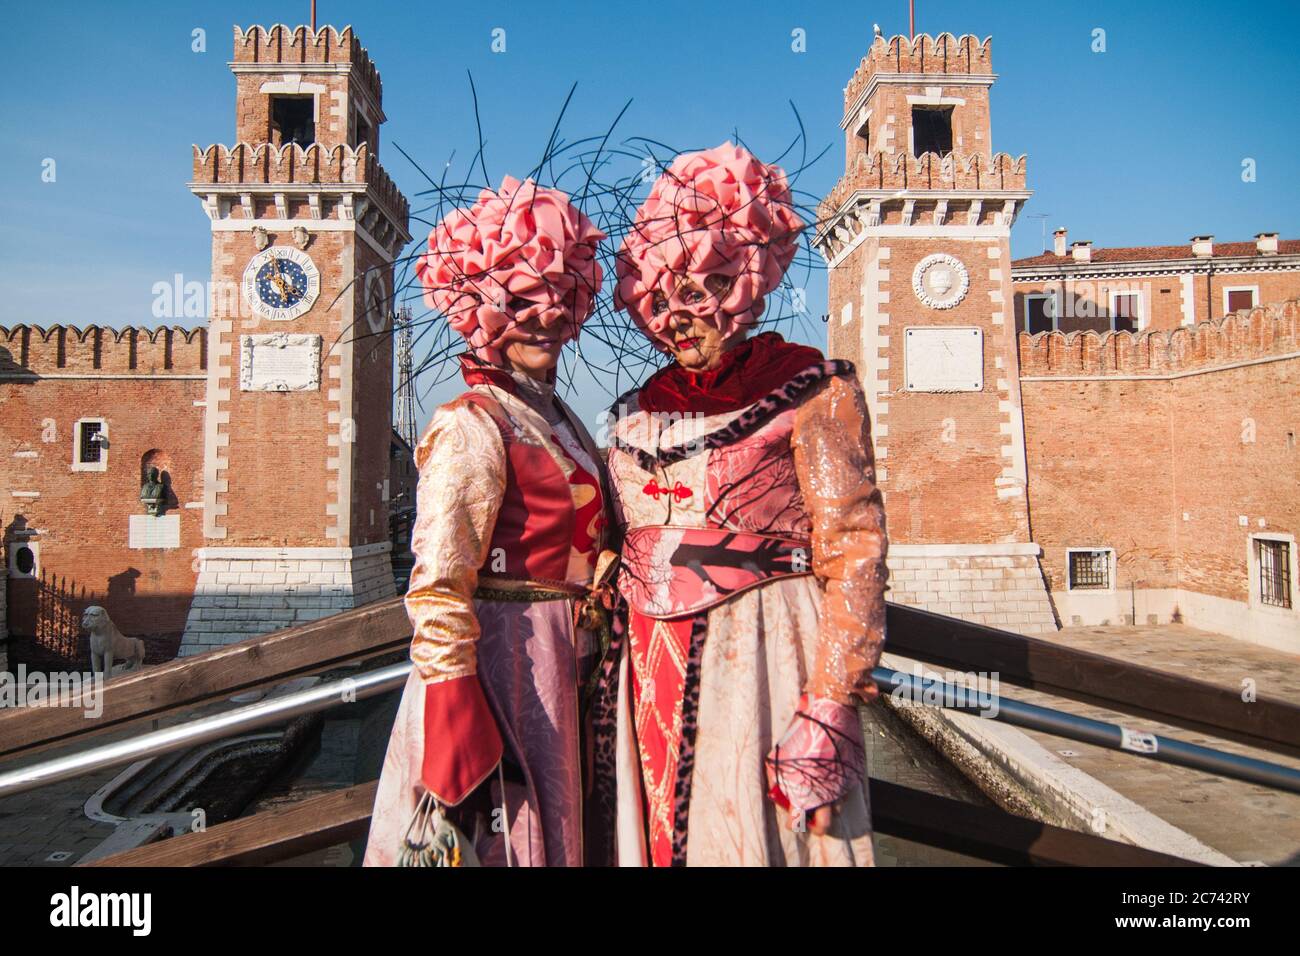 VENEDIG, ITALIEN - 28. FEBRUAR 2020: Zwei rosa und blumige Masken posieren vor dem Arsenale von Venedig während des Karnevals von Venedig Stockfoto